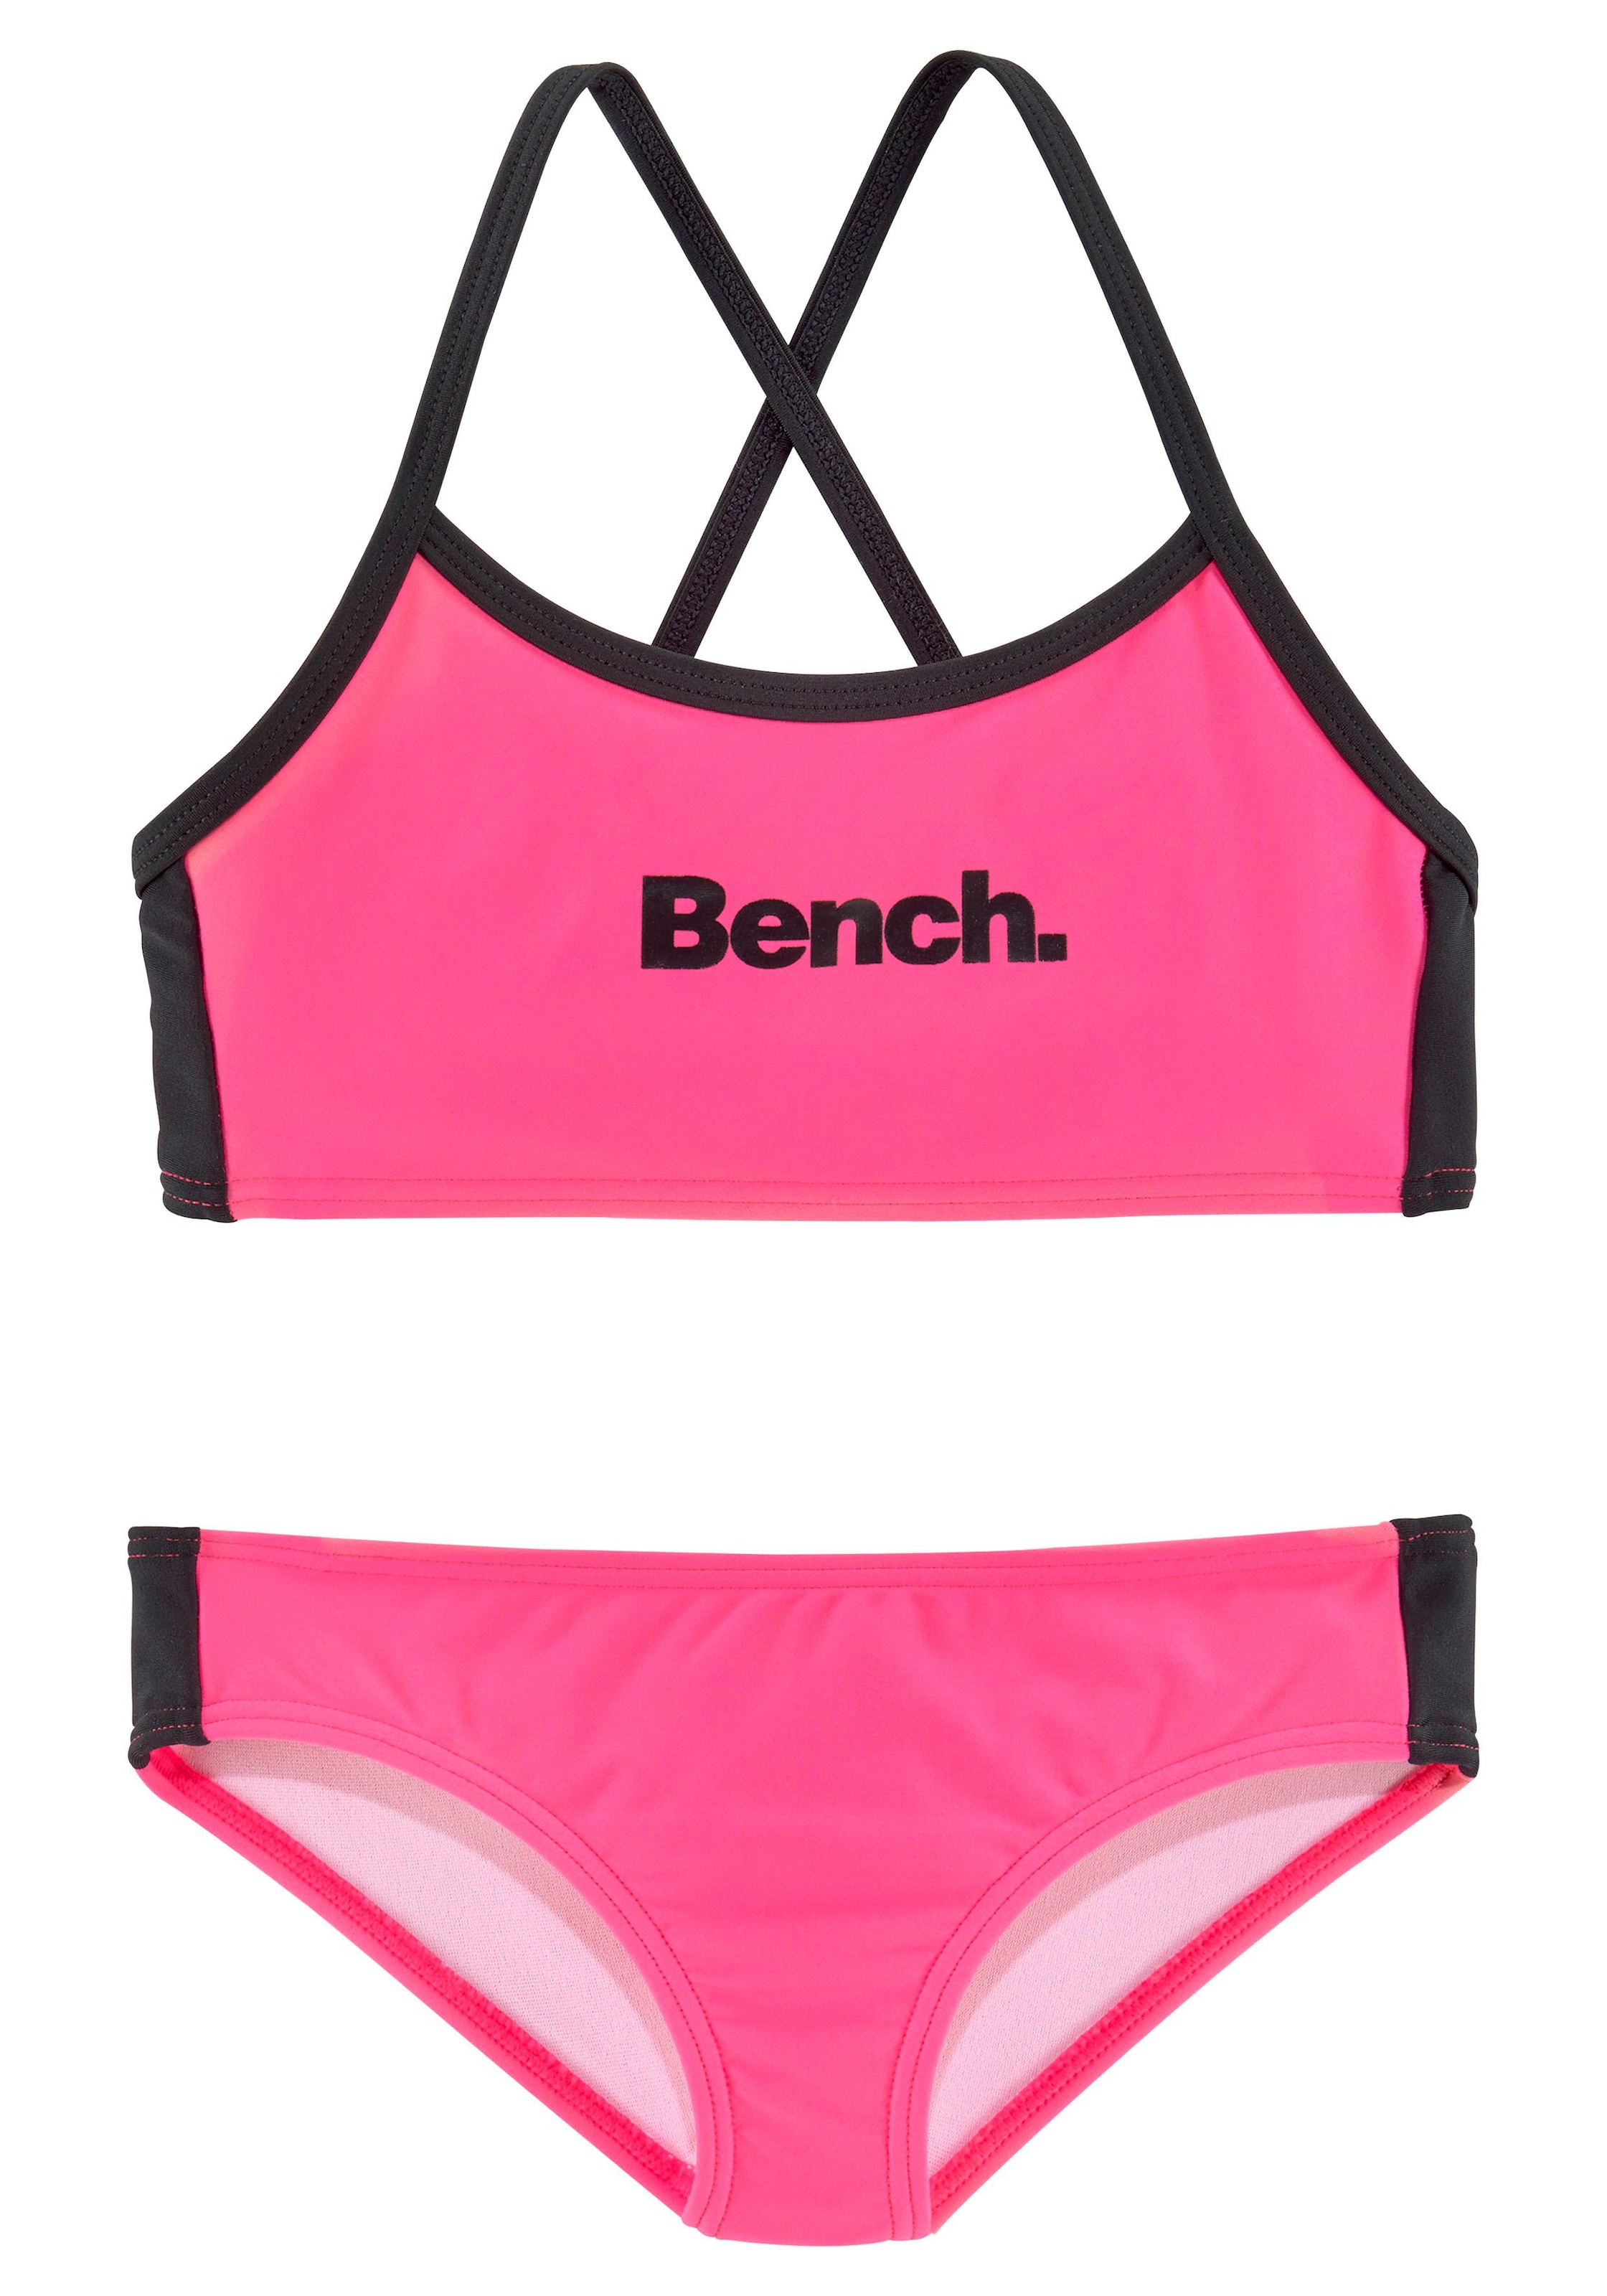 Bench. Bustier-Bikini, gekreuzten mit OTTO Trägern bei